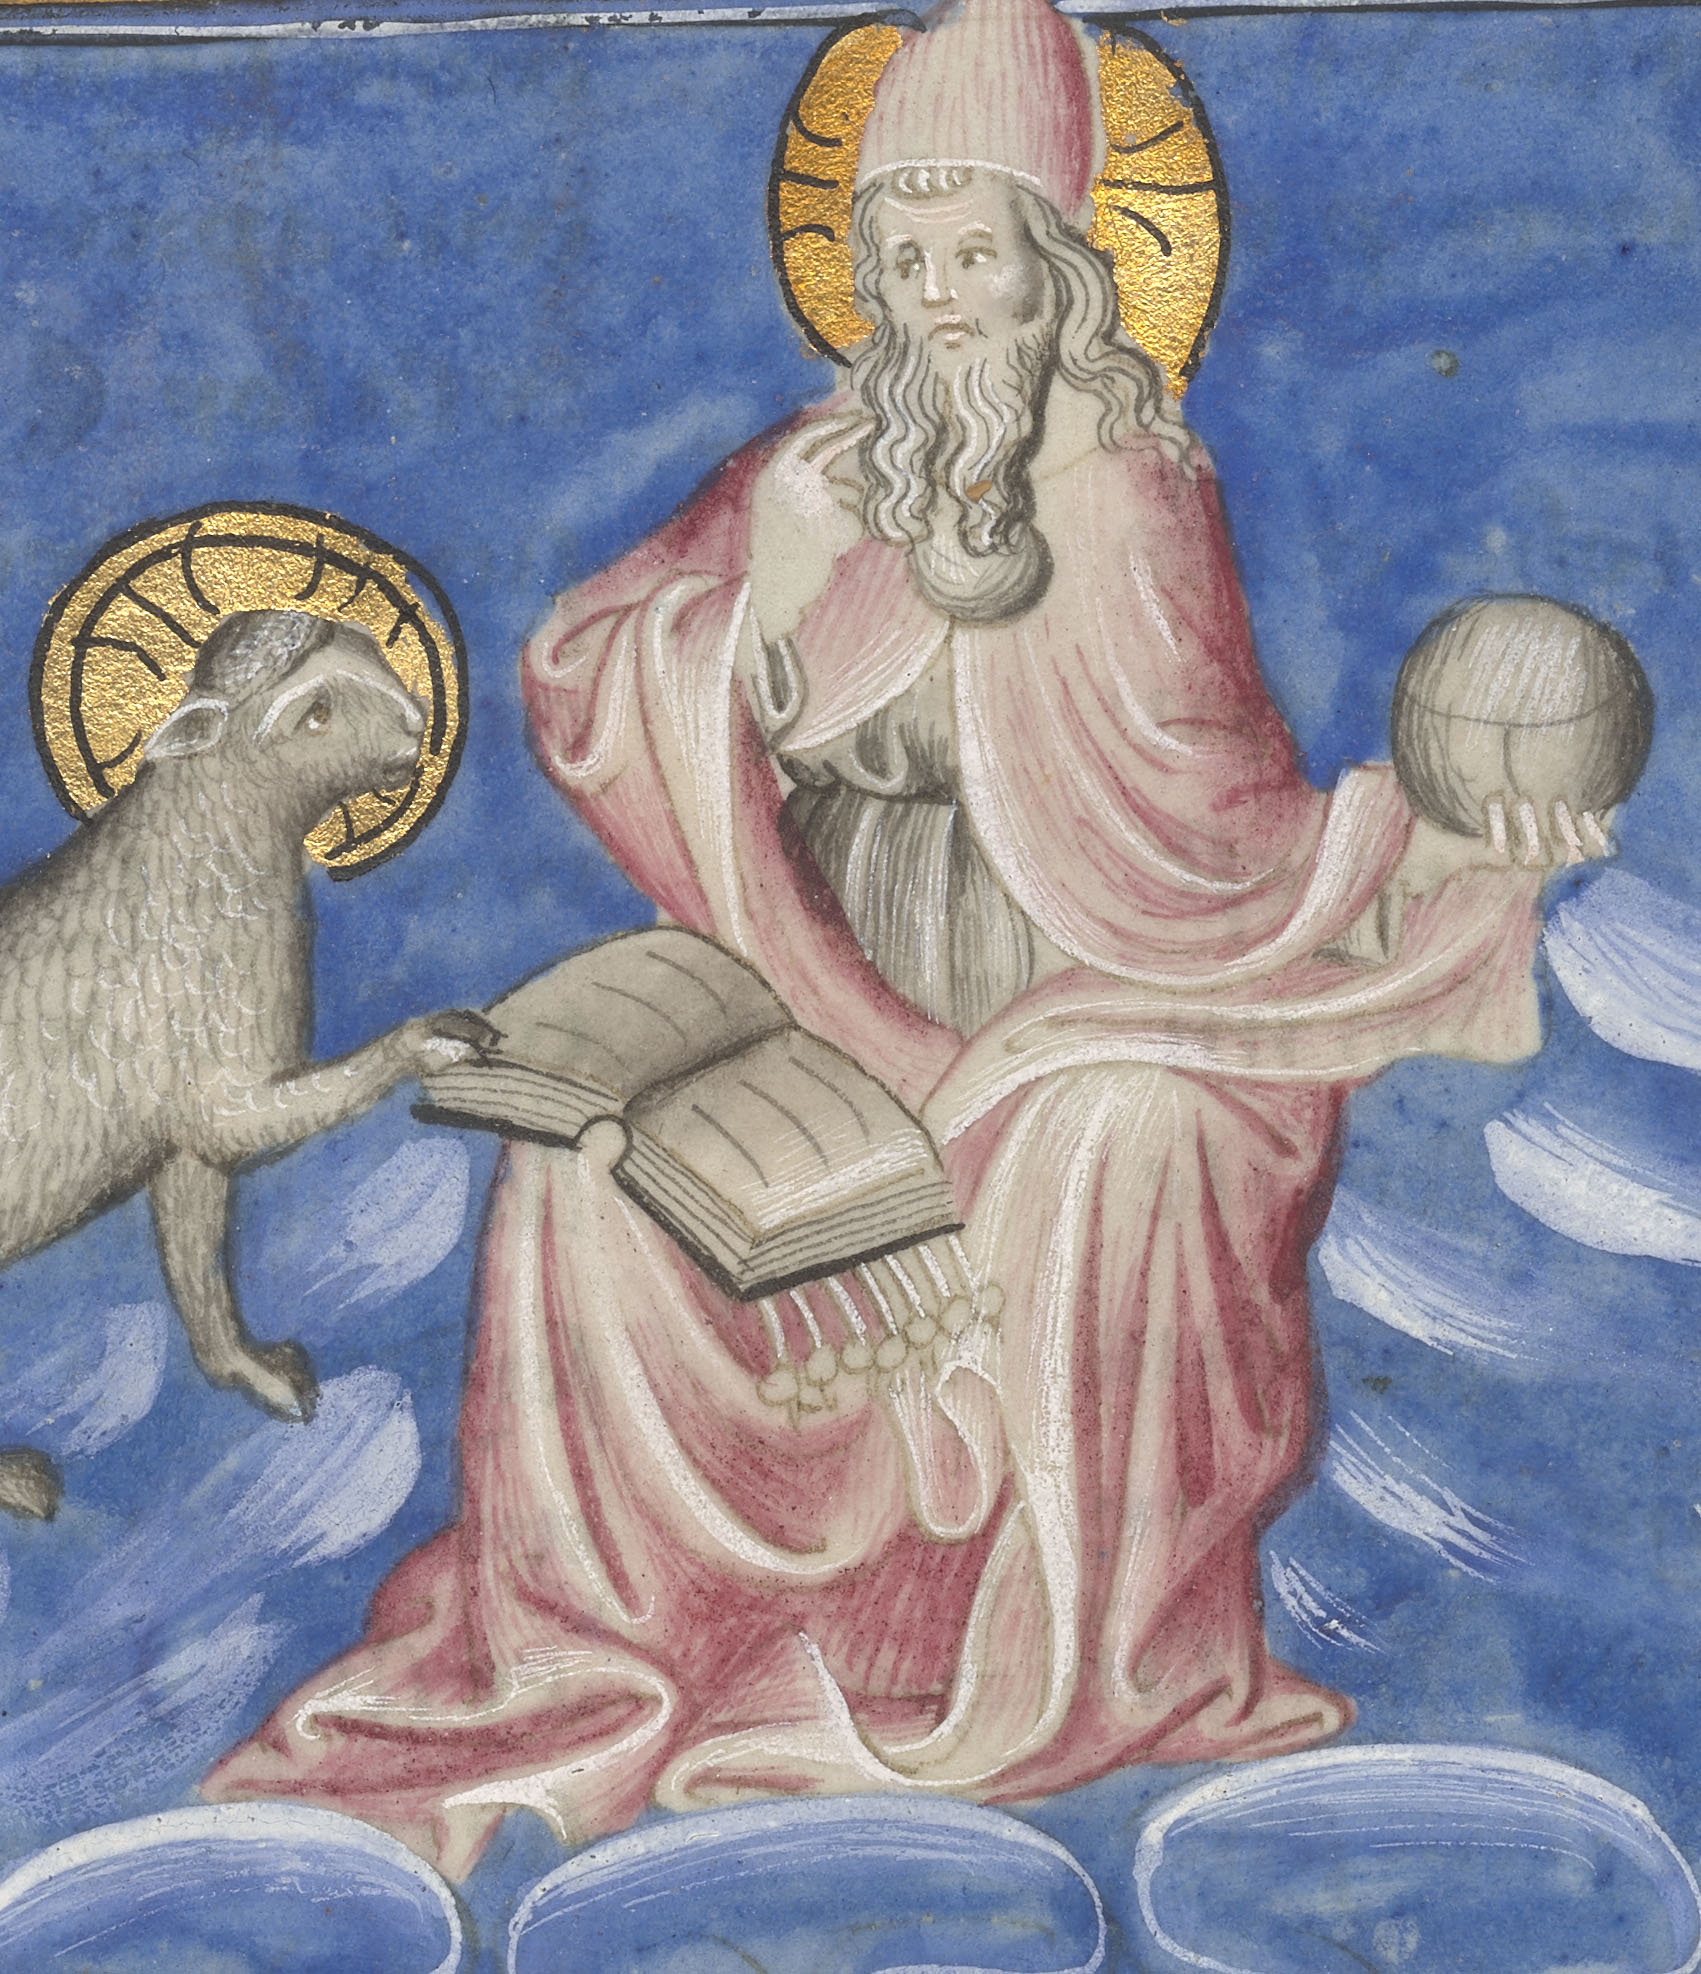 Detalle del folio 9 verso del manuscrito del Apocalipsis de Berry mostrando Jesucristo con el cordero abriendo el libro de los siete sellos